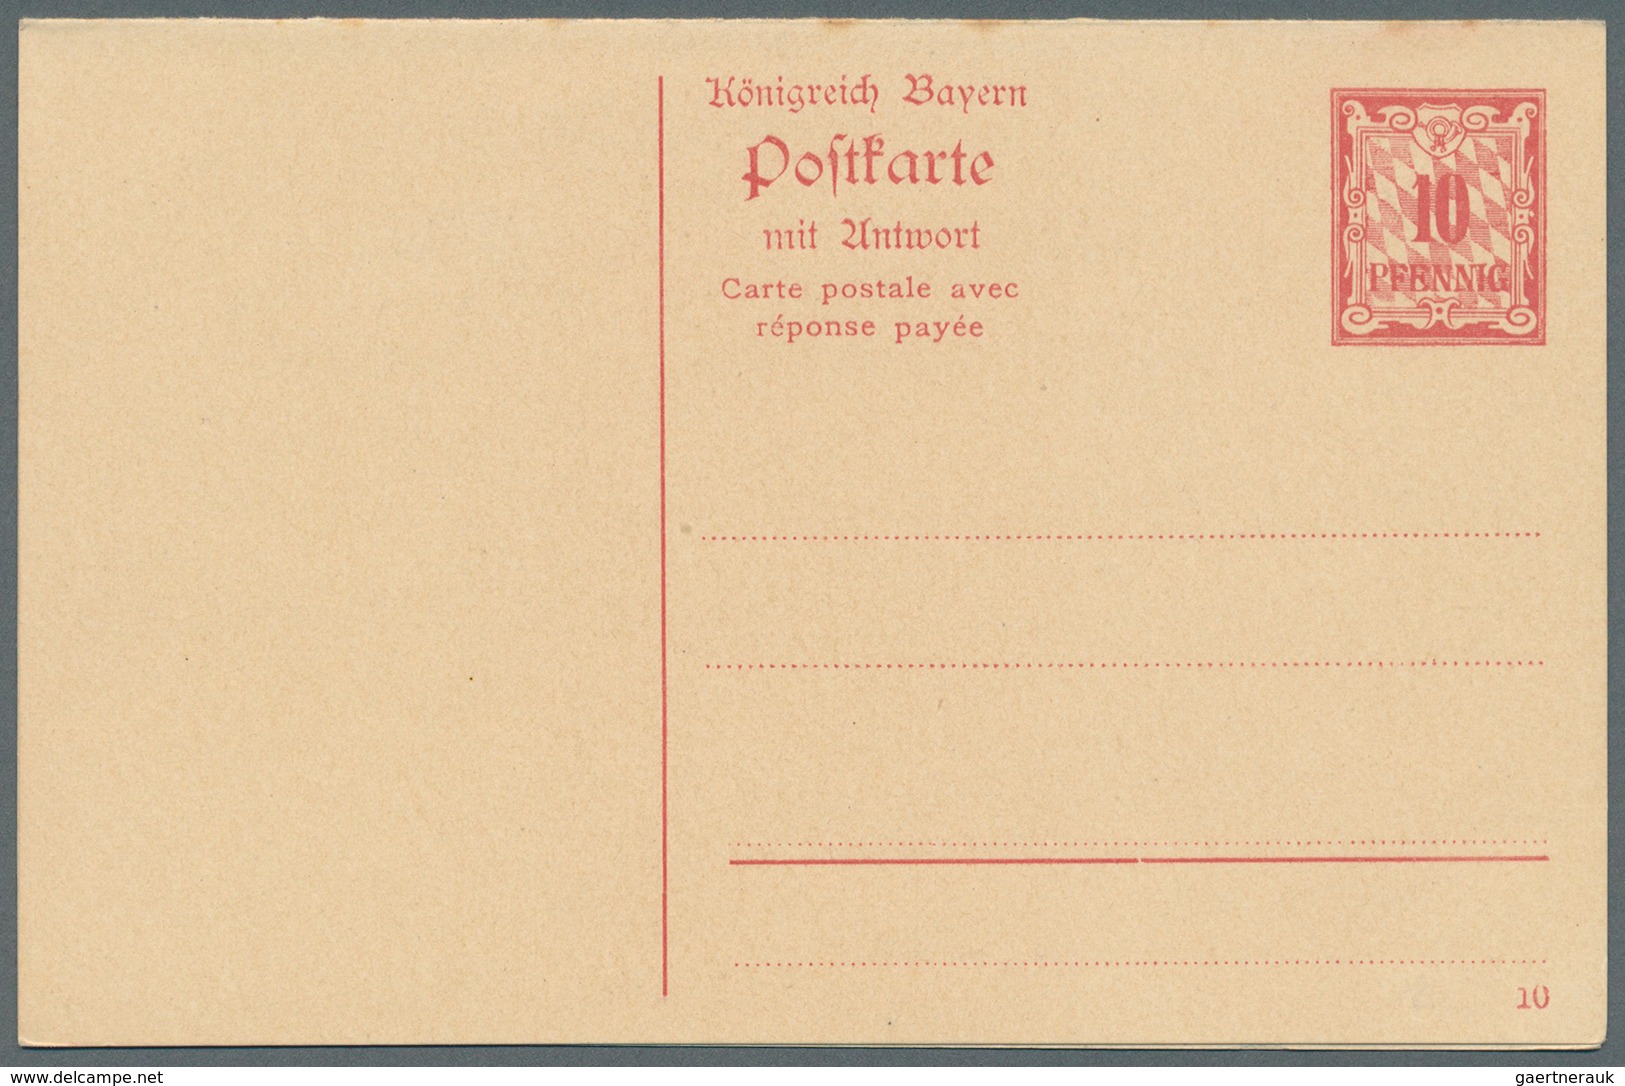 31222 Bayern - Ganzsachen: 1869/1920, große Sammlung von insgesamt 608 nur versch. Ganzsachen mit Postkart